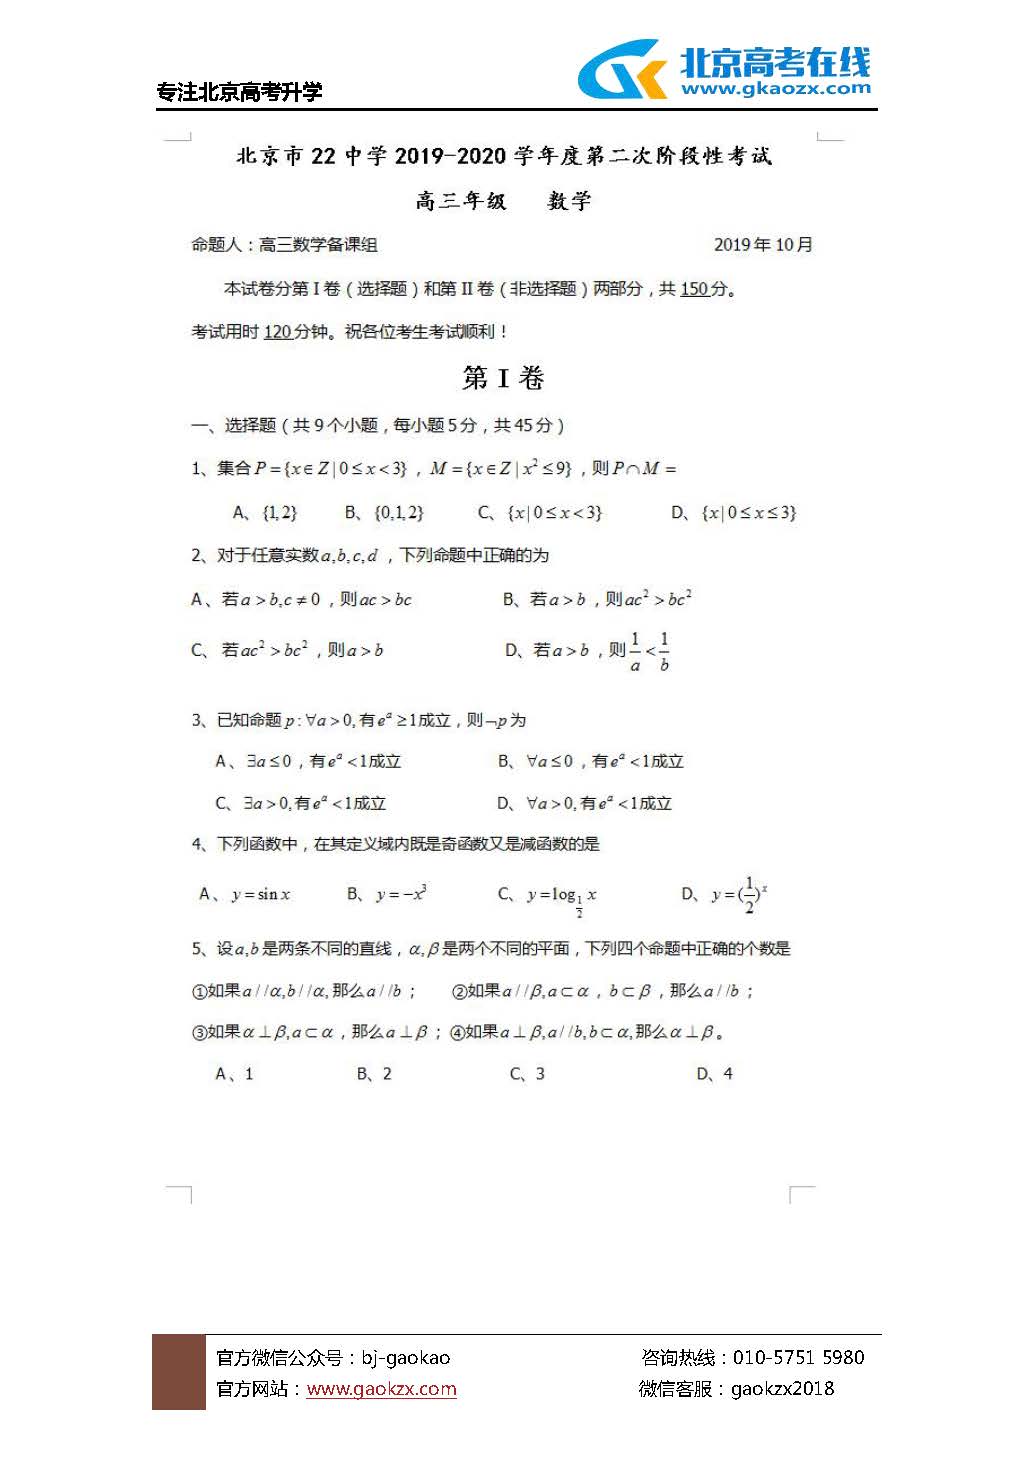 北京22中2019-2020学年度高三年级10月份测试数学试题